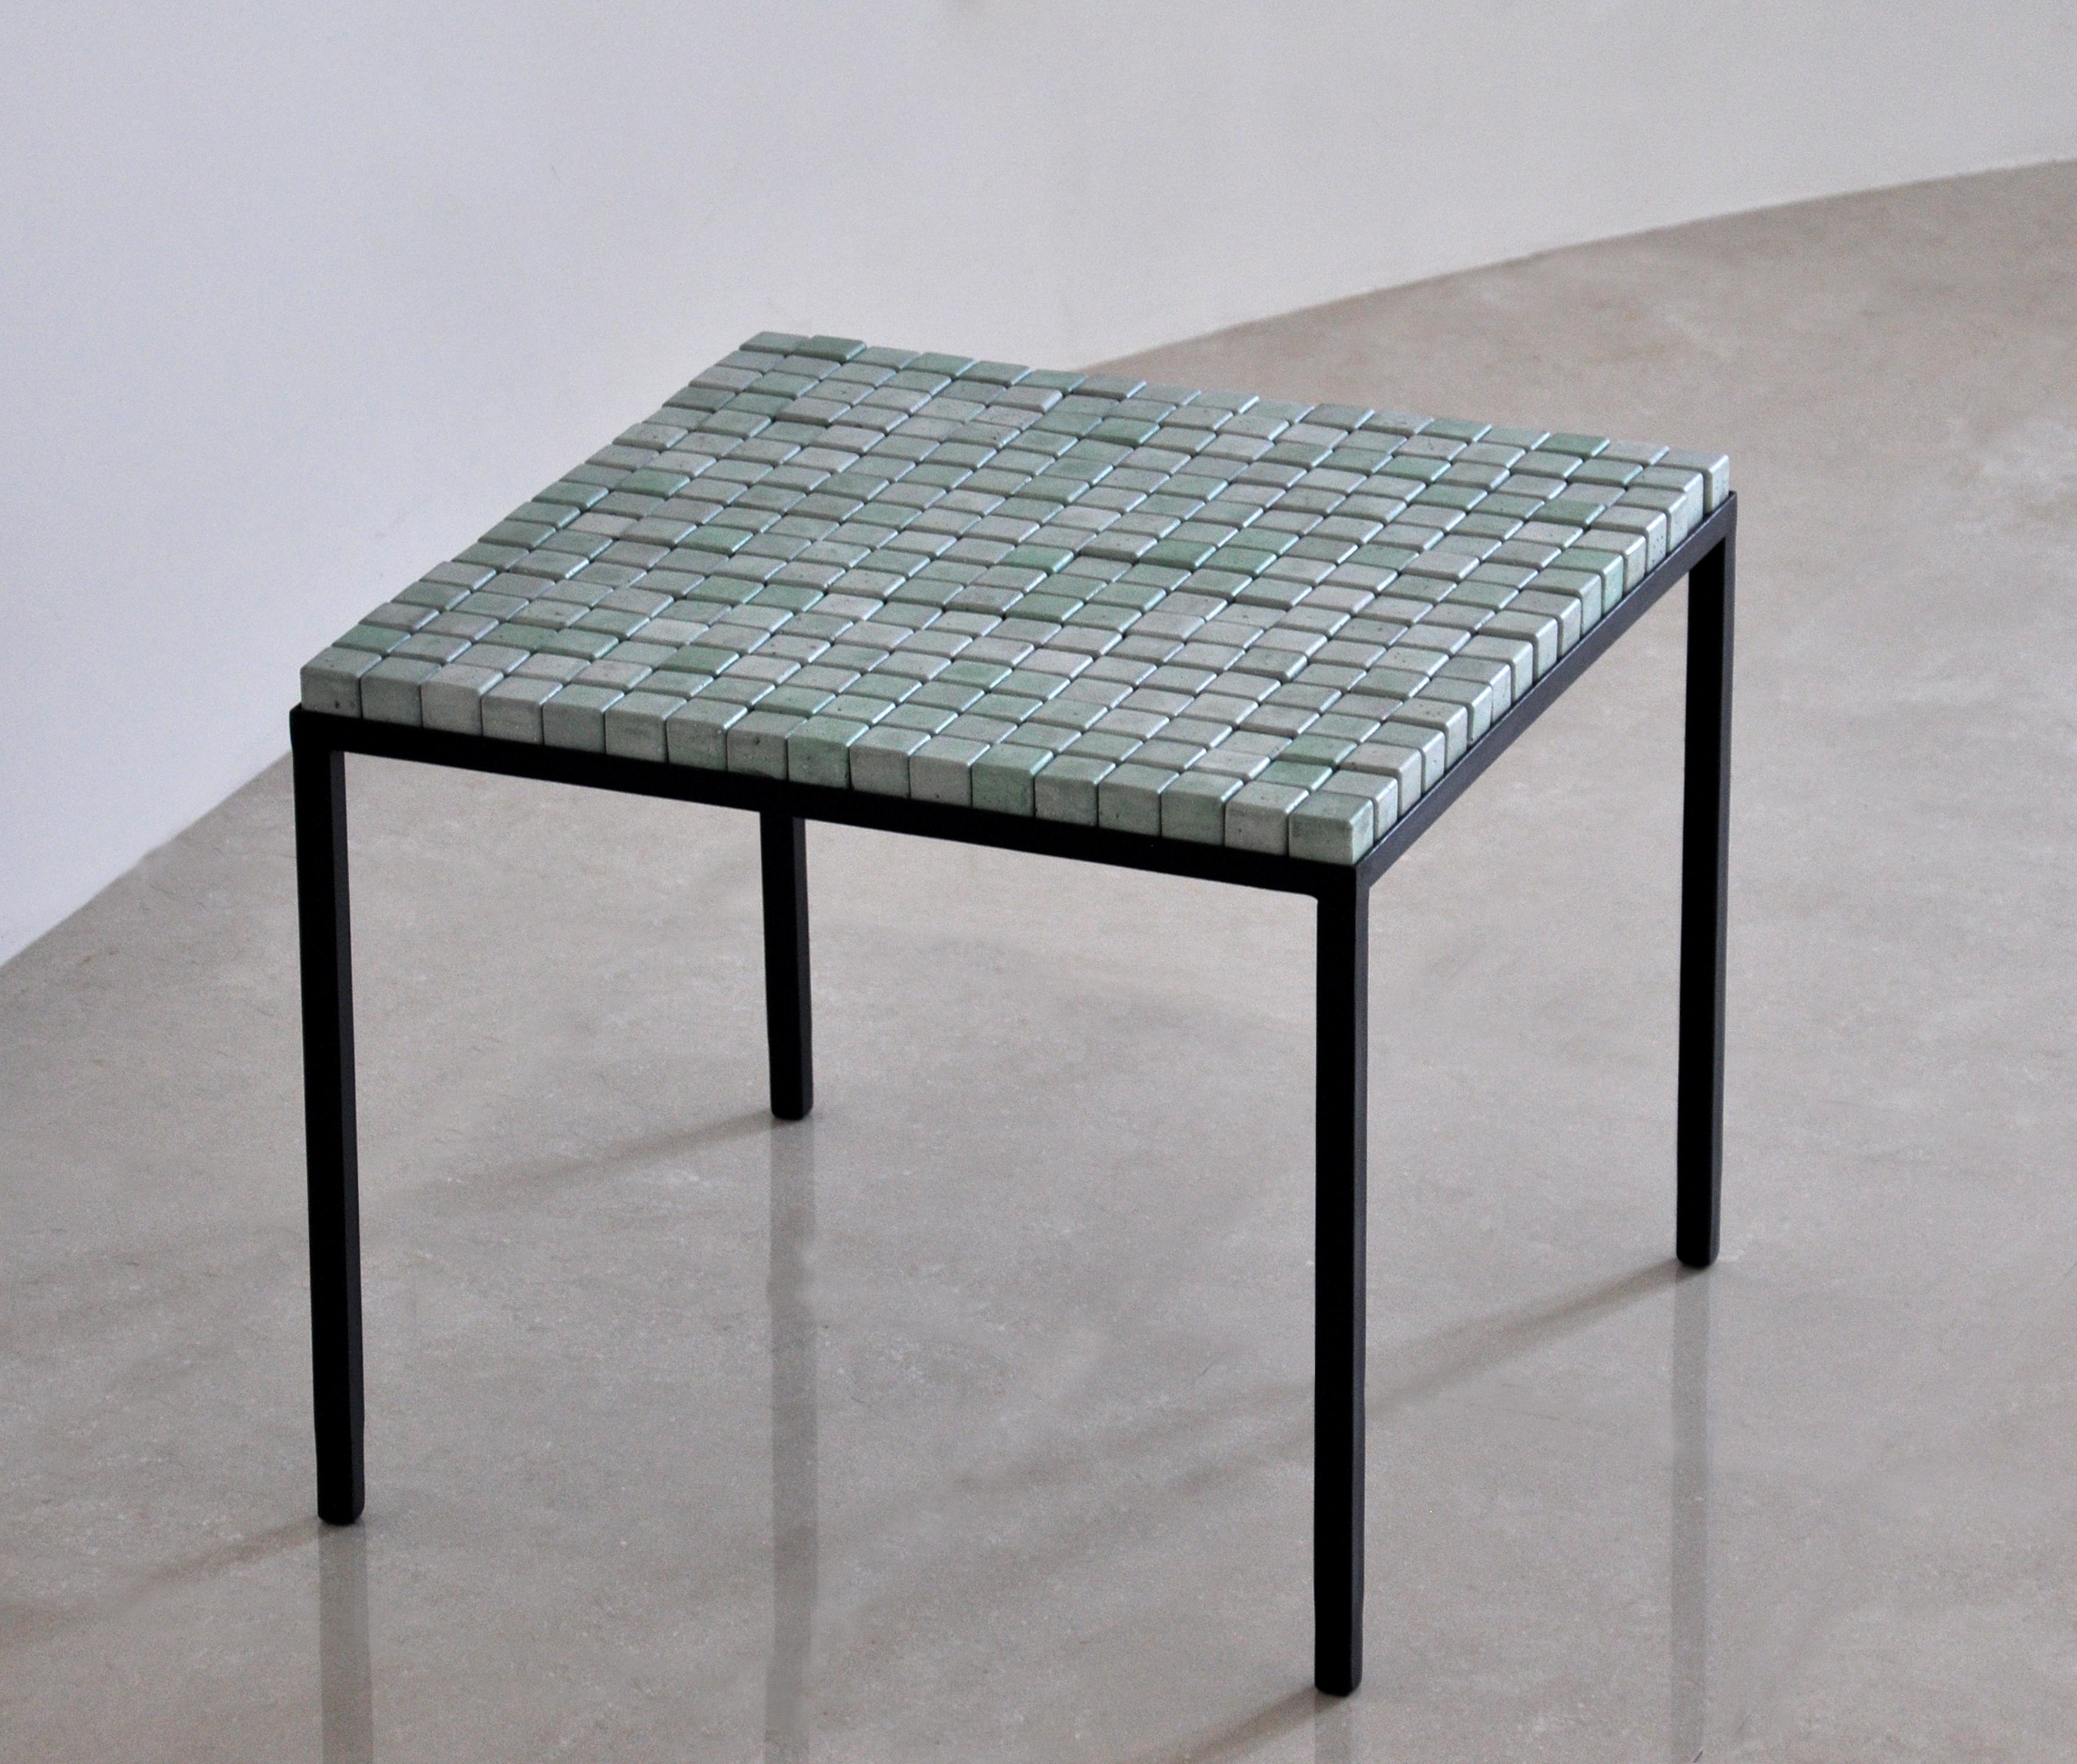 Grün (Türkis) Betonwürfel Tisch cc mint von Miriam Loellmann 
Auflage von 10 Stück. 
Unterschrieben.
MATERIALIEN: farbiger Beton, Stahl (handbemalt), Leder.
Abmessungen: 46,5 x 56,5 x 56,5 cm
Gewicht: 22 kg

Die Würfel sind abnehmbar, jede